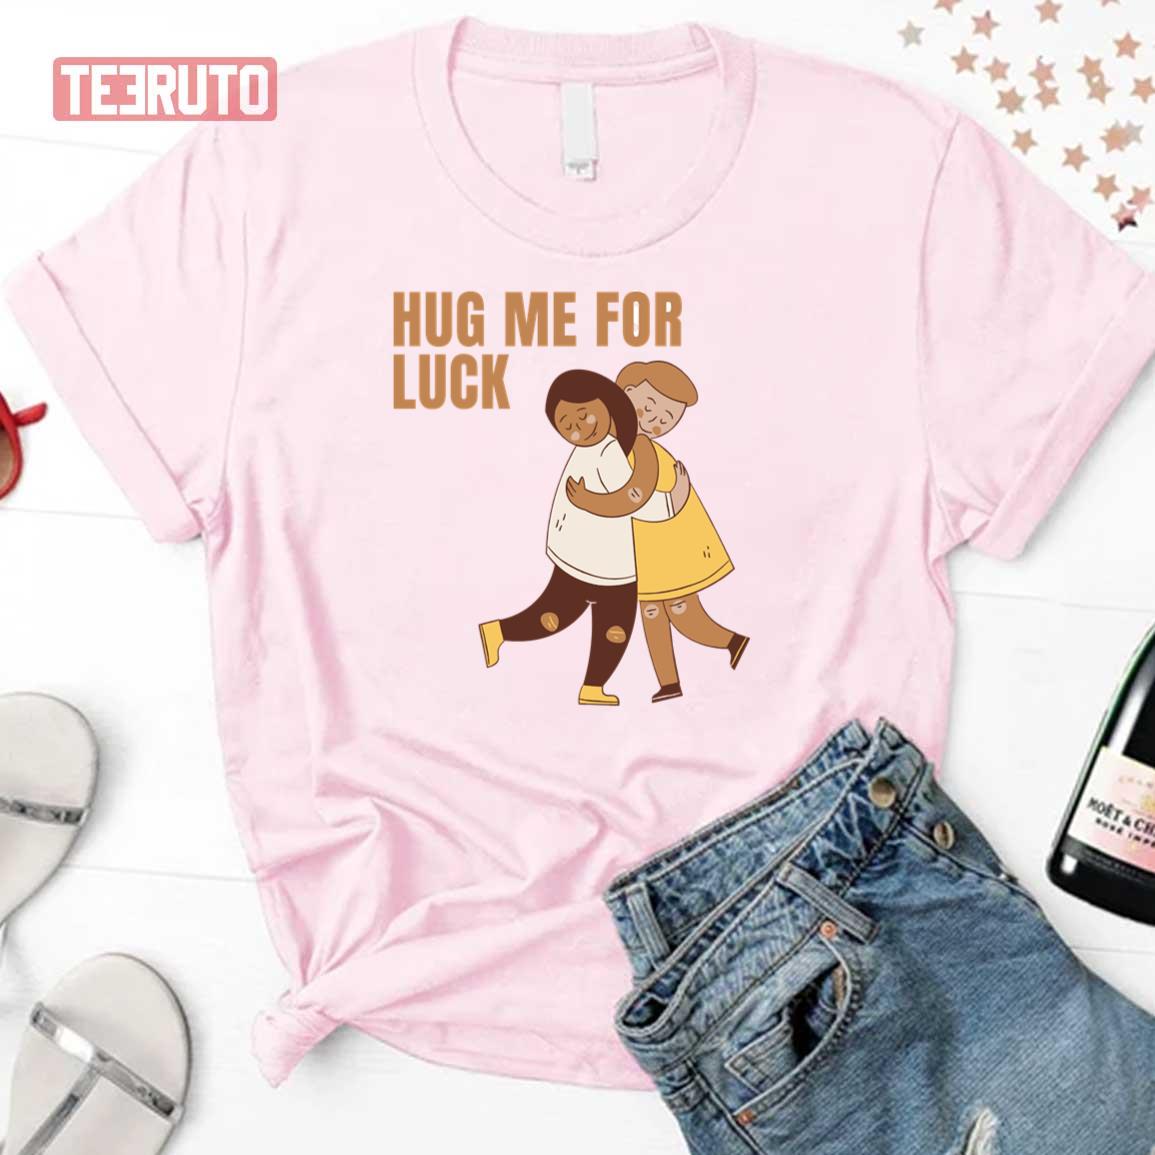 Hug Me For Luck Unisex T-Shirt